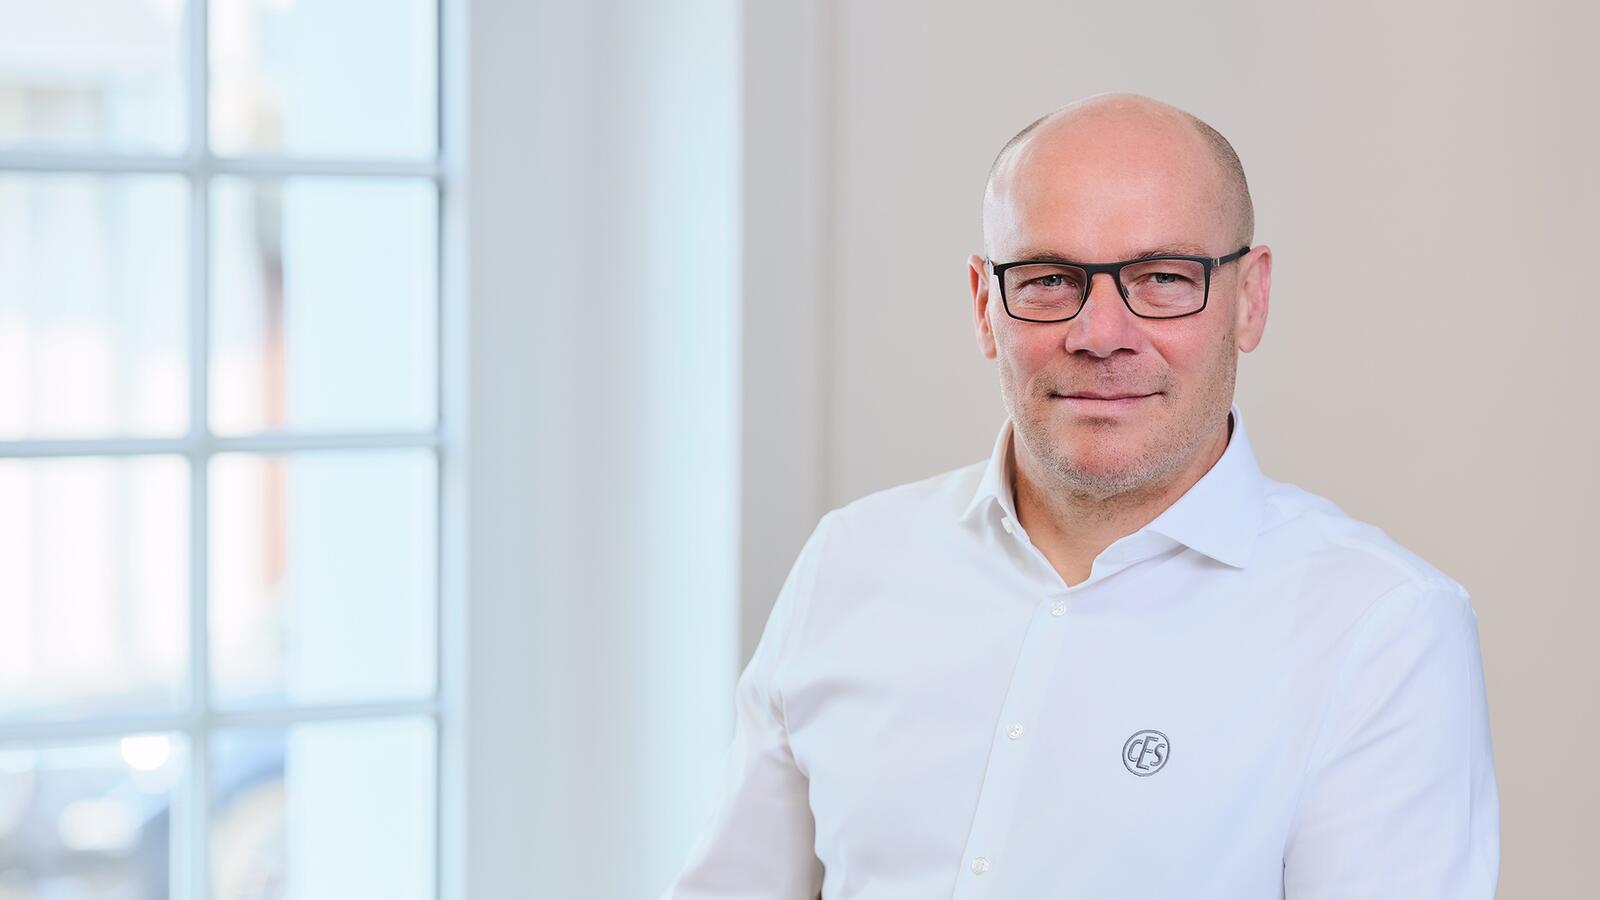 Bernd Becker, bislang Vertriebsleiter DACH und Niederlande, ist neuer kaufmännischer Geschäftsführer bei CES und hat sich ambitionierte Wachstumsziele gesetzt.